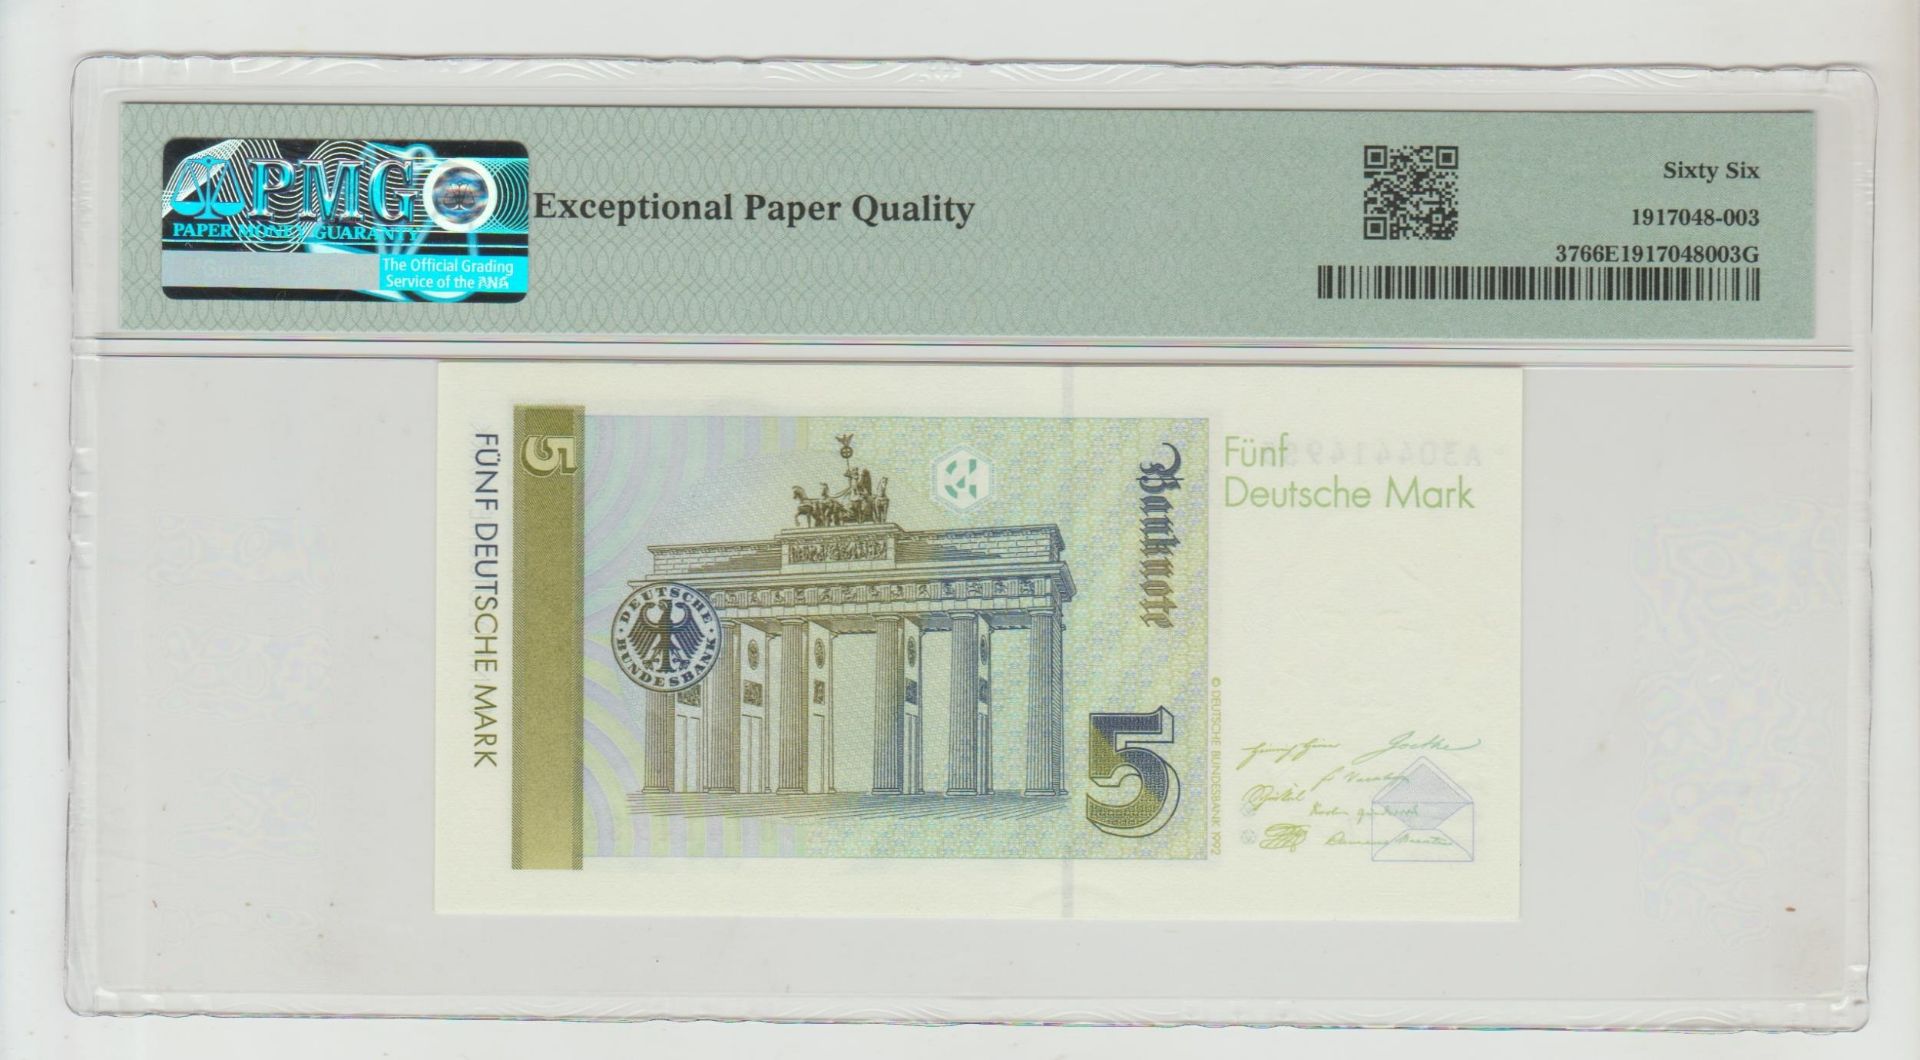 Germany, 5 Deutsche Mark, 1991 year - Bild 2 aus 2